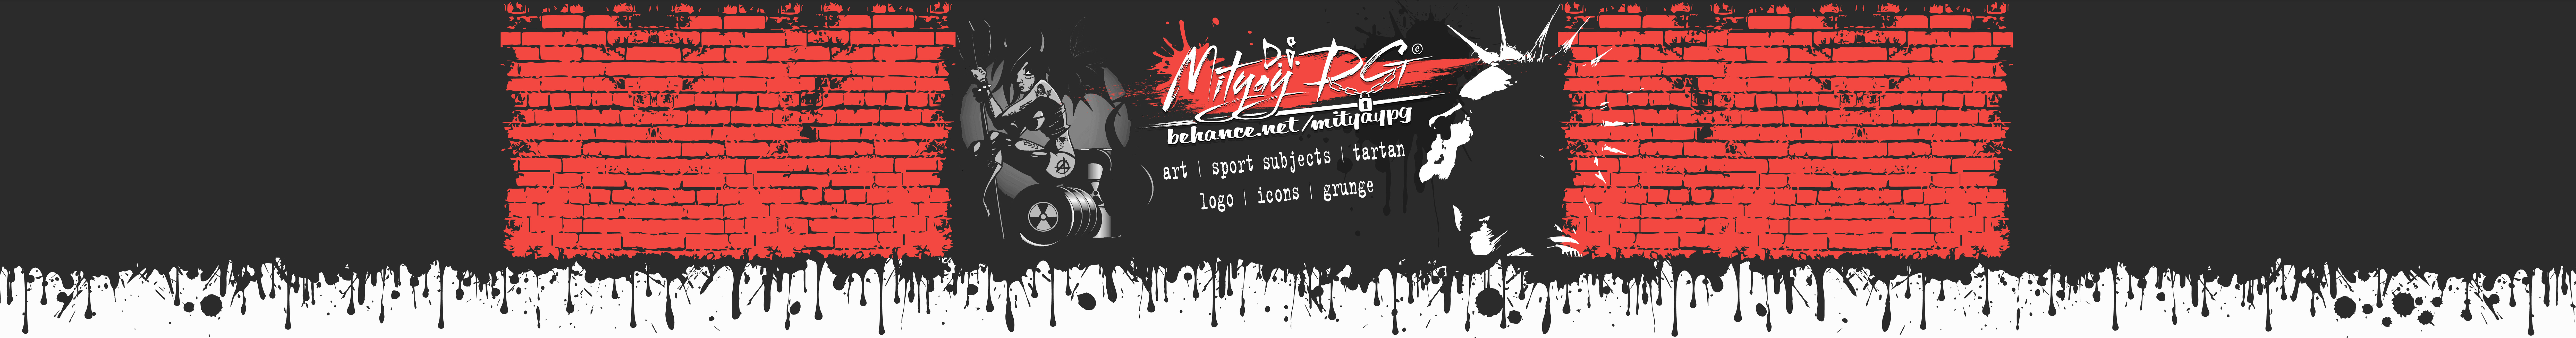 Profil-Banner von Mityay PG